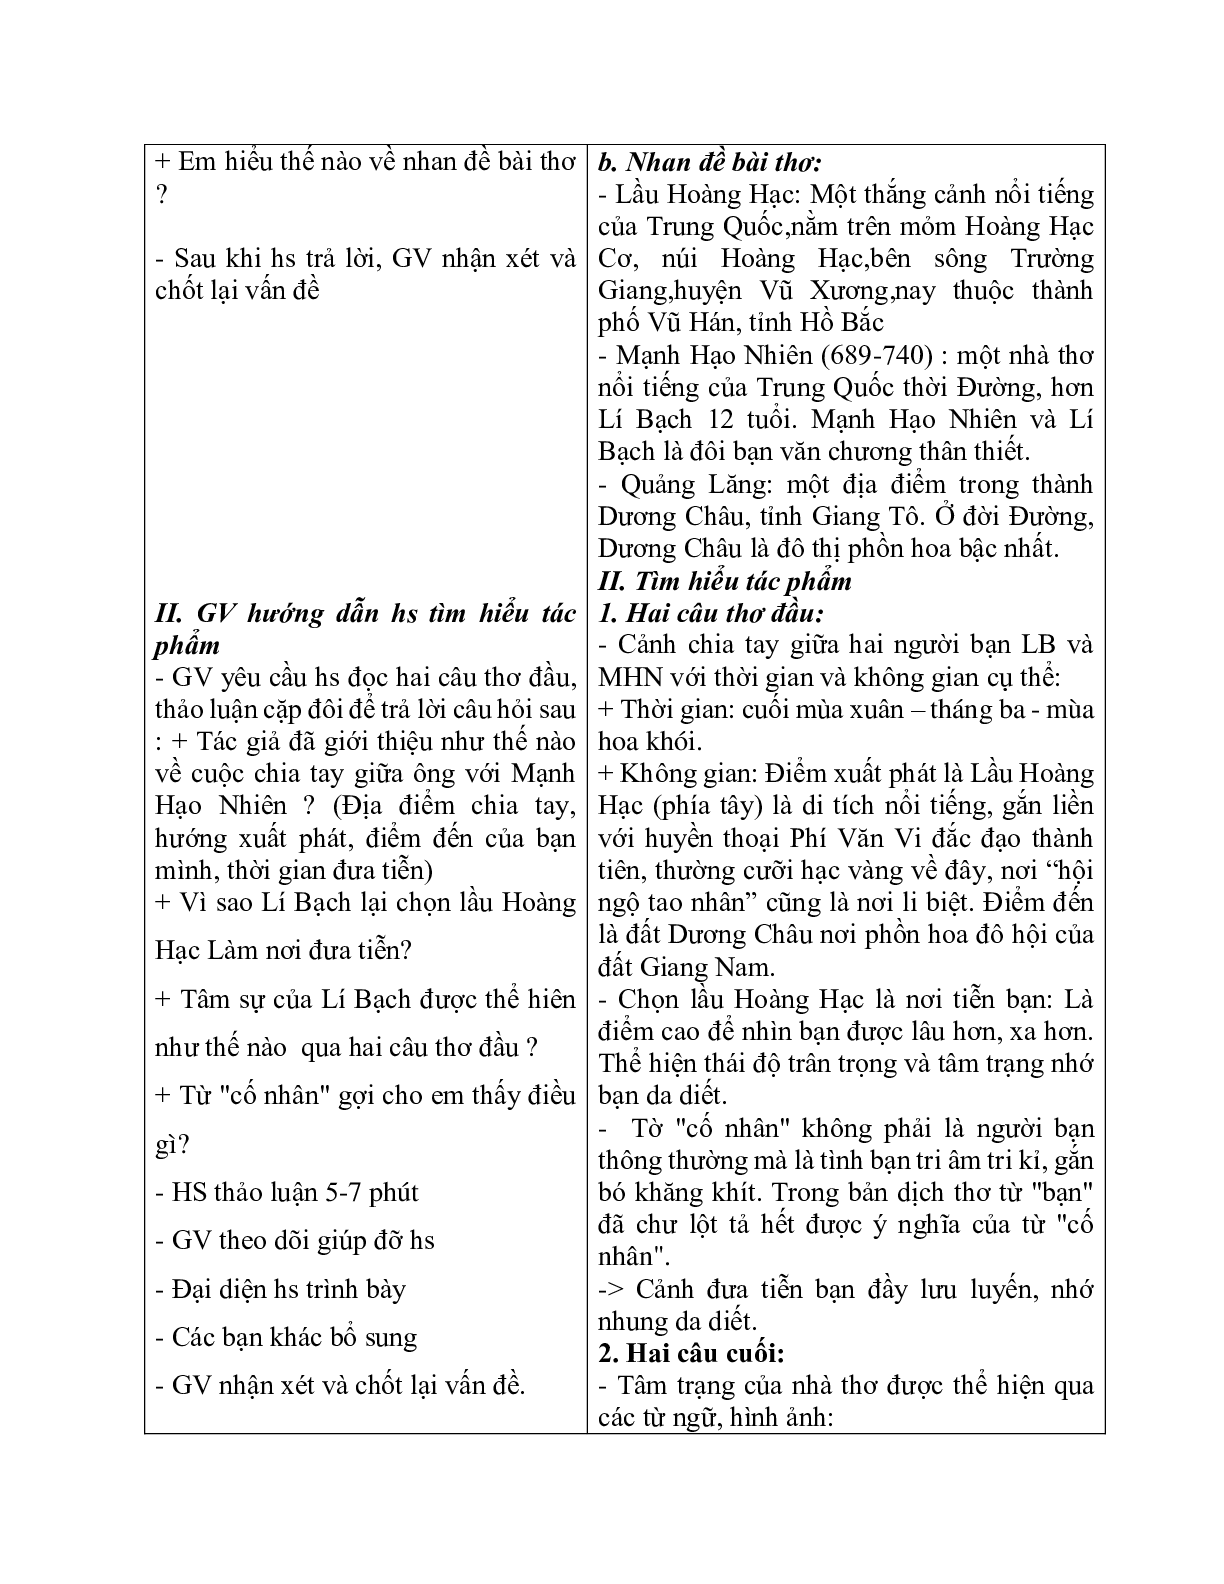 Giáo án ngữ văn lớp 10 Tiết 44: Tại lầu hoàng hạc tiễn mạnh hão nhiên đi quảng lăng (trang 3)